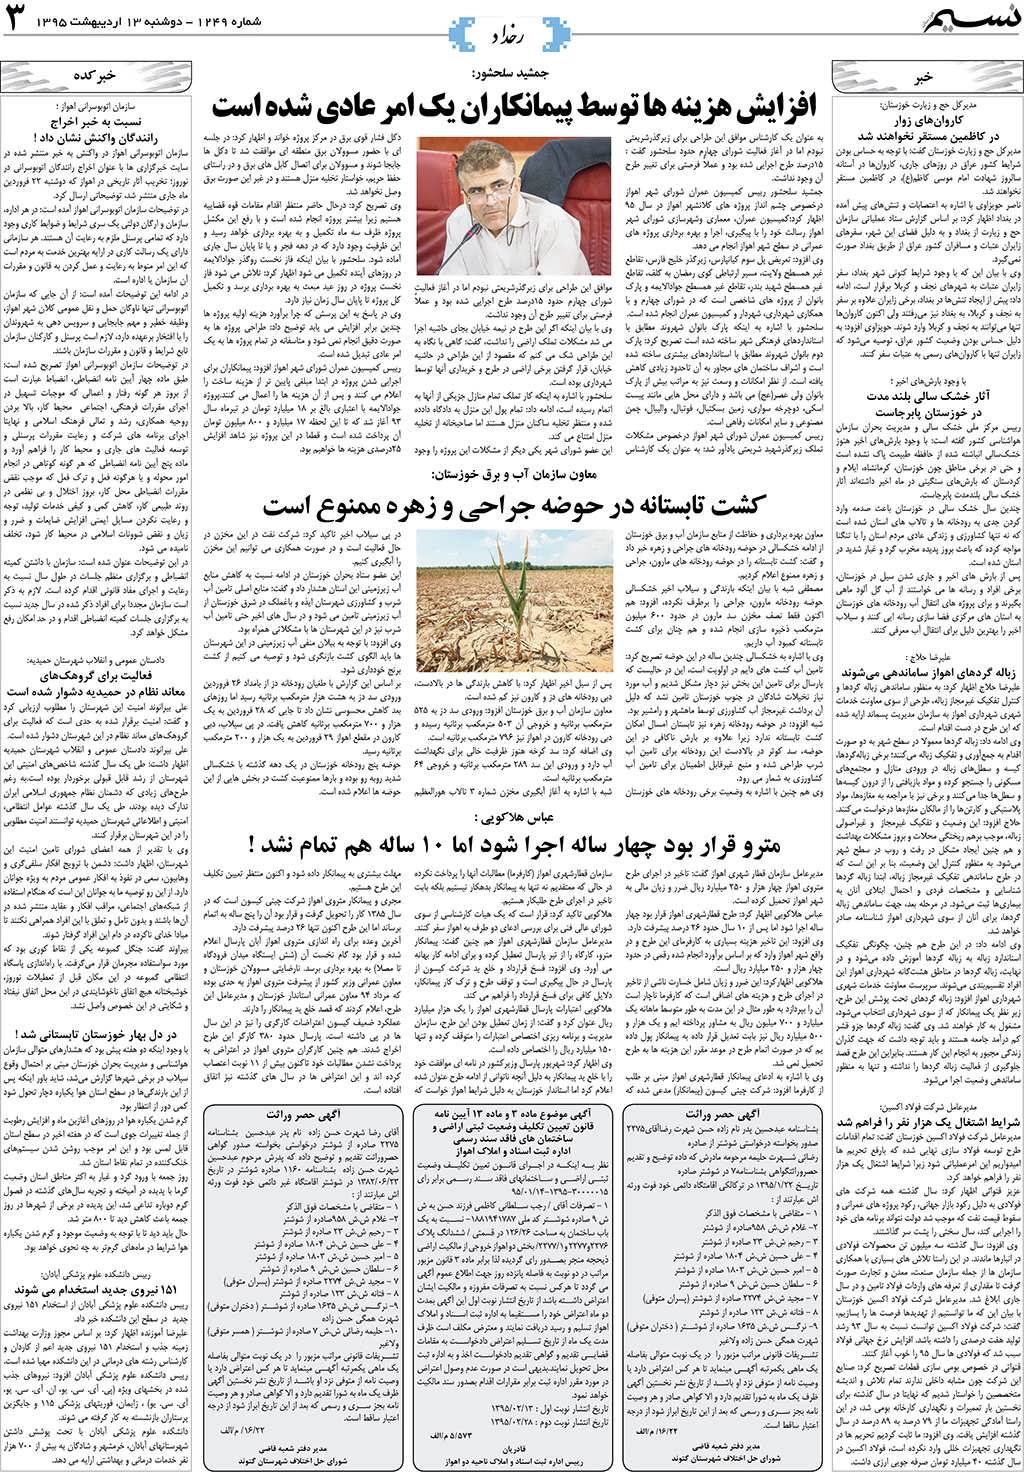 صفحه رخداد روزنامه نسیم شماره 1249